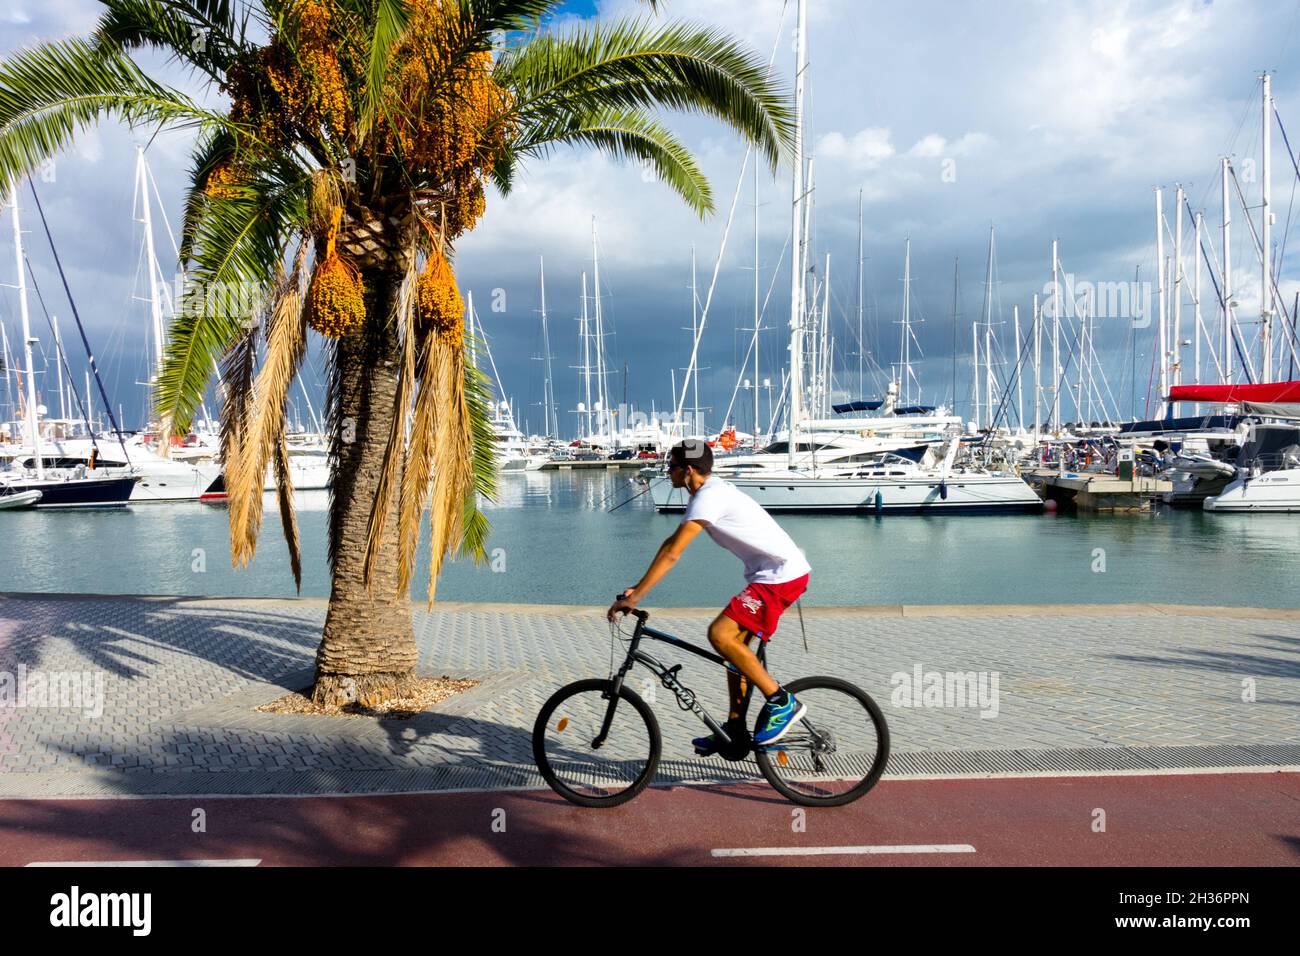 Port de Palma de Mallorca, l'homme à vélo Espagne yachts amarrés dans port de plaisance Banque D'Images